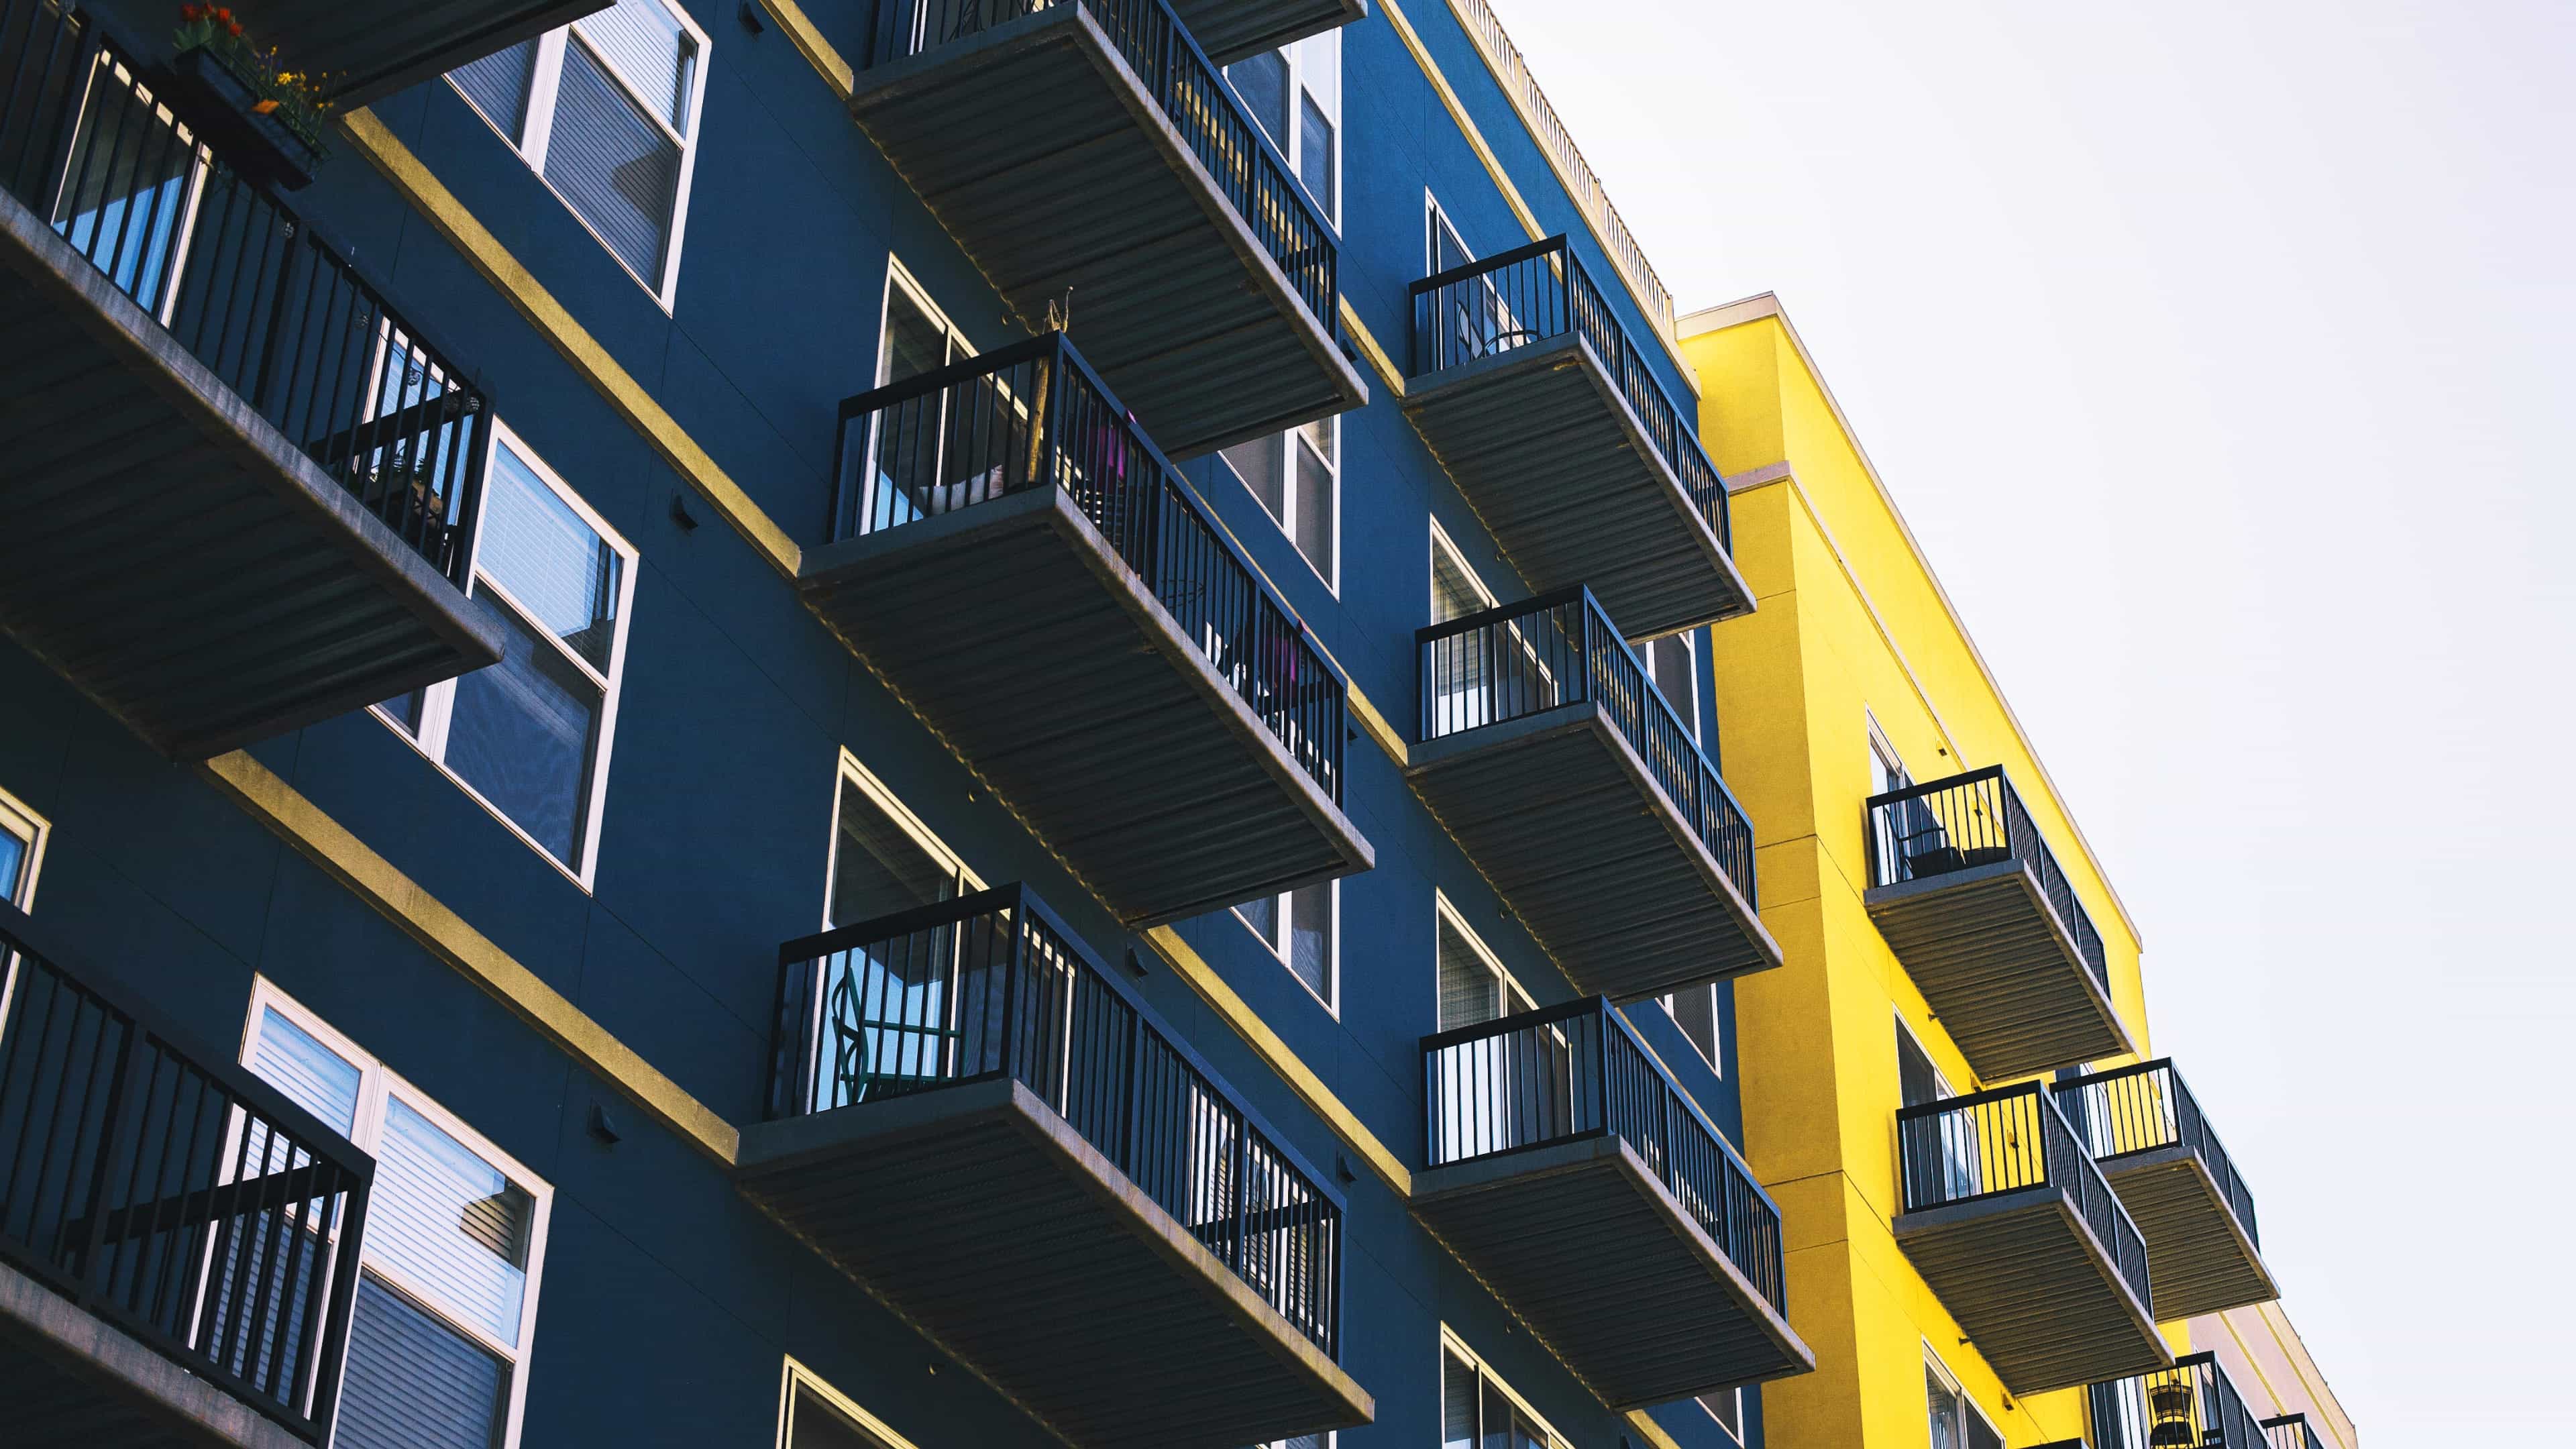 Blick hinauf auf ein blau-gelbes Wohnhaus mit vielen Etagen und Balkonen